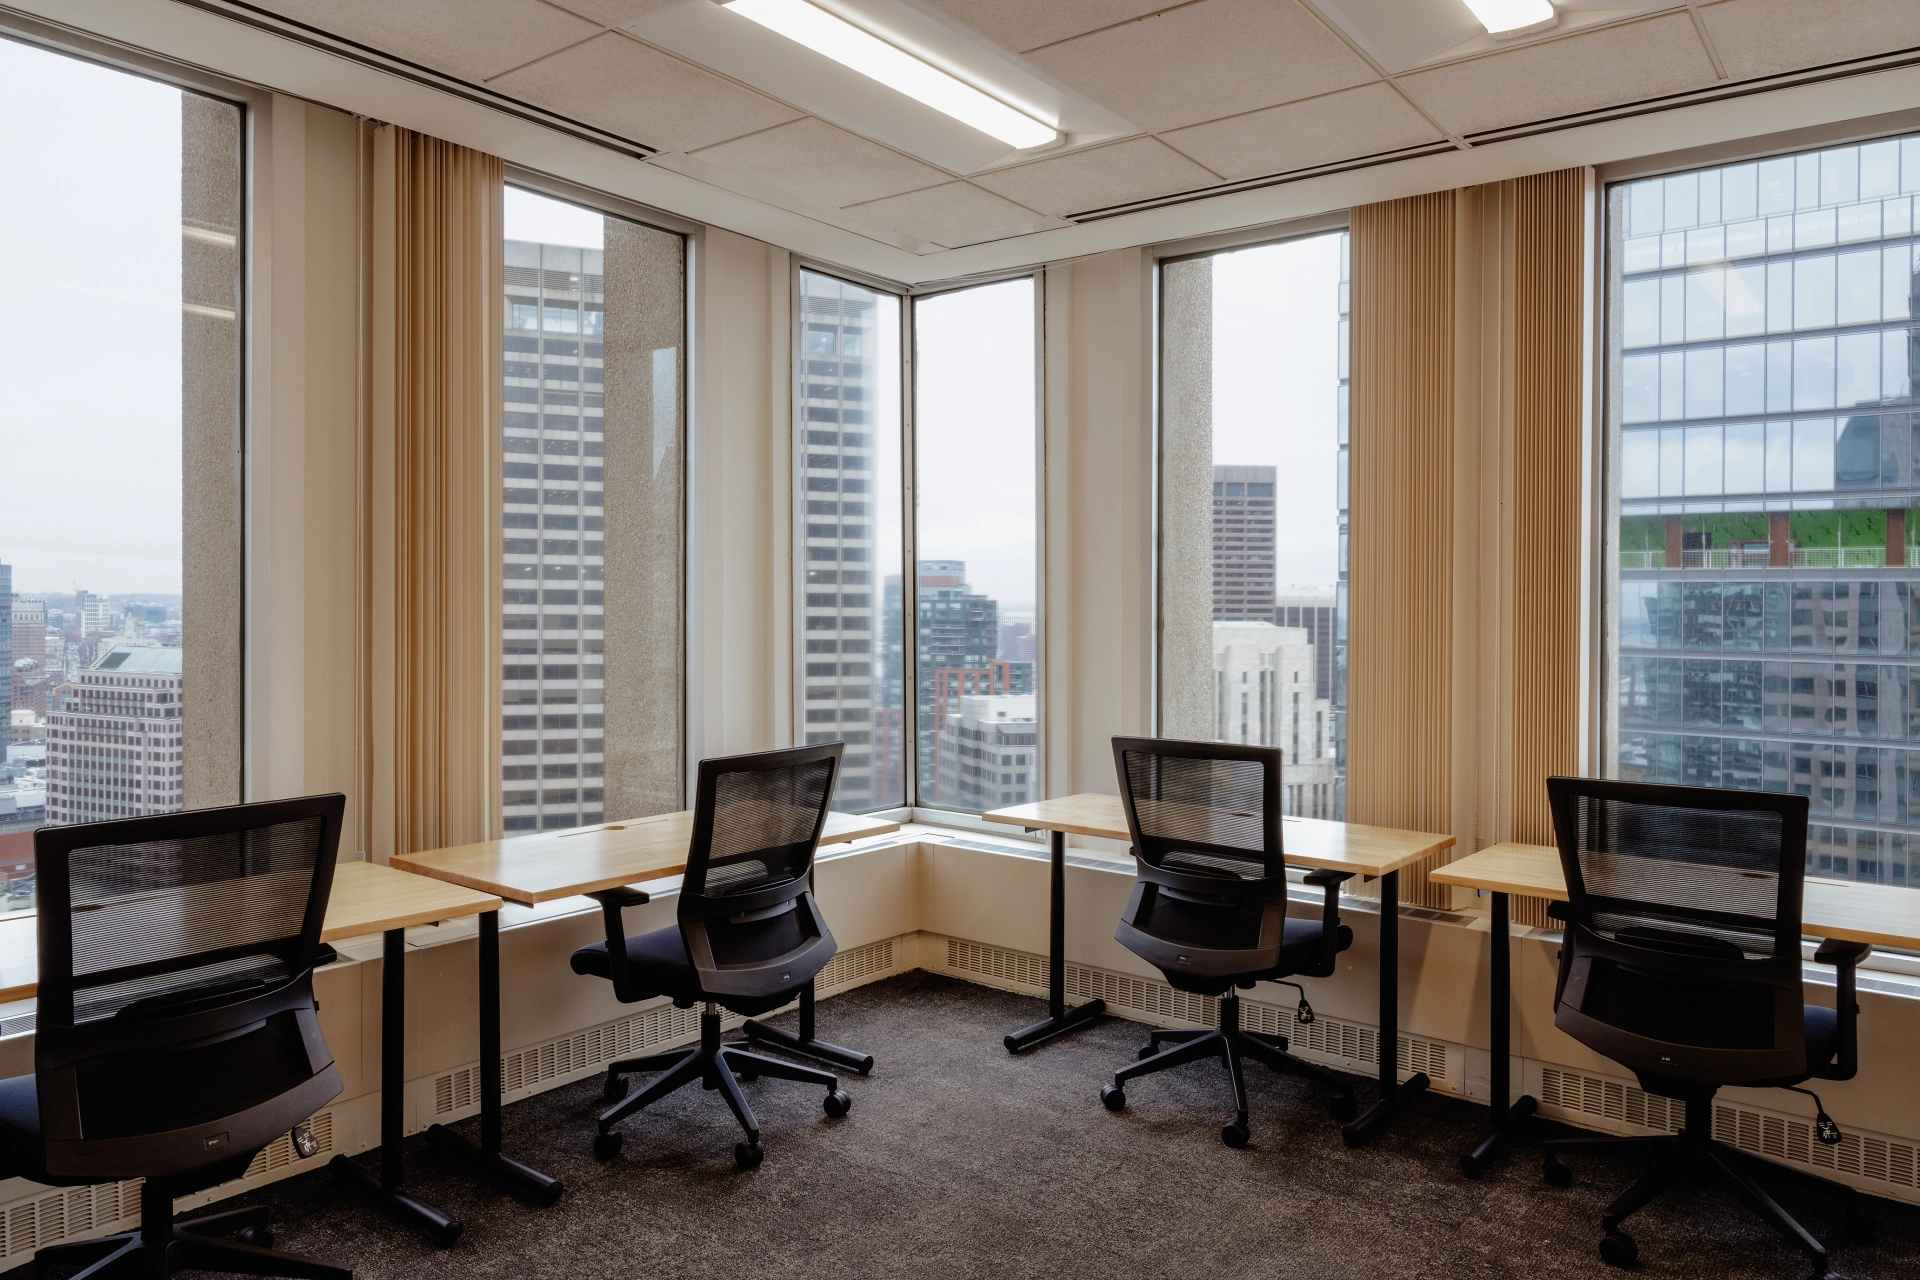 Een kantoorwerkruimte met bureaus en stoelen, die een schilderachtig uitzicht over de stad bieden.